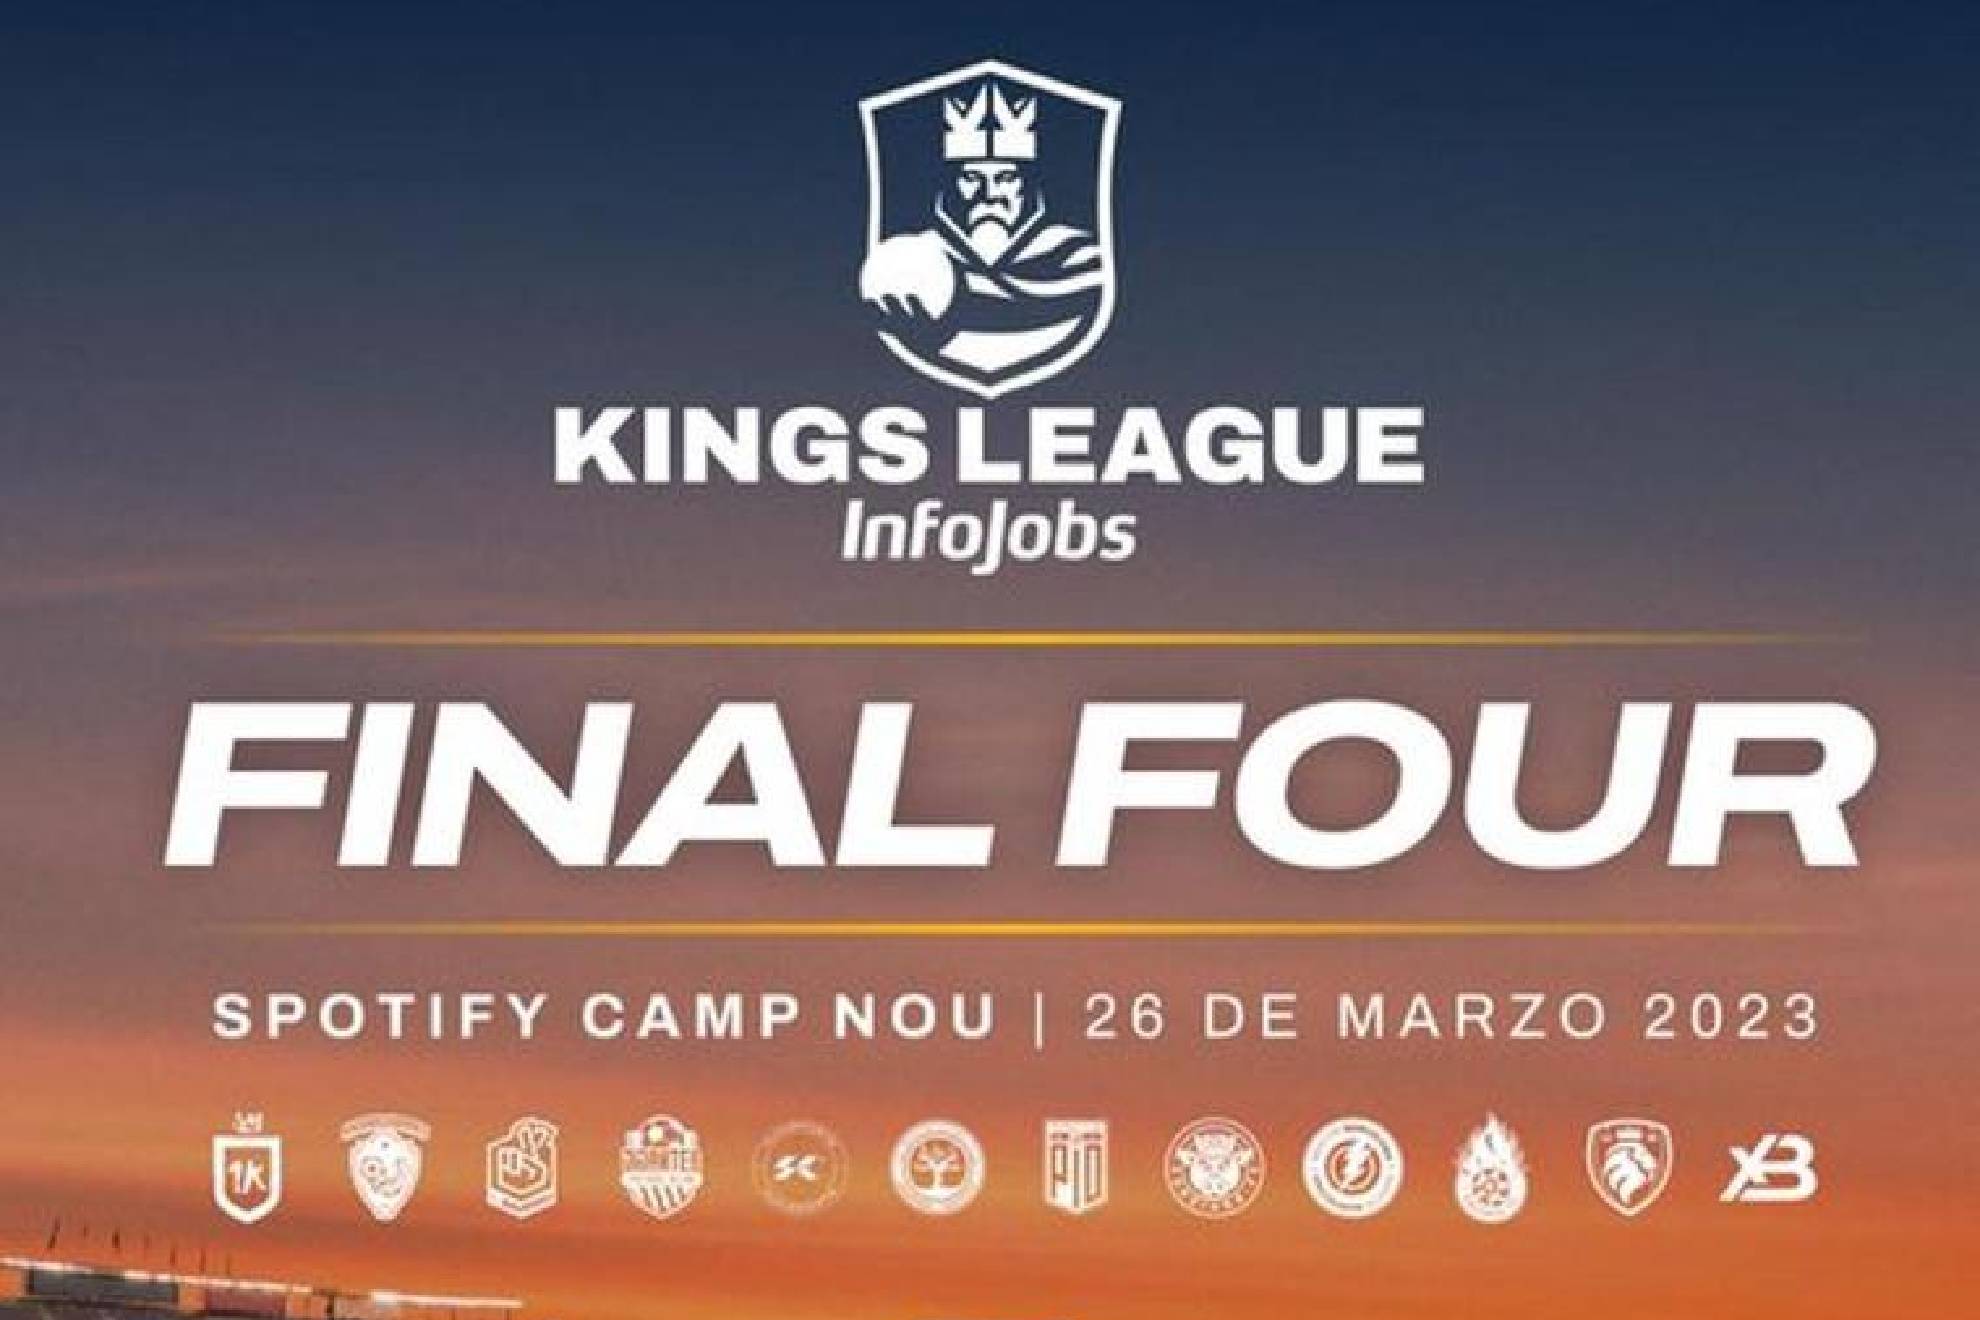 Todo listo para el esperado Final Four de la Kings League 2023.